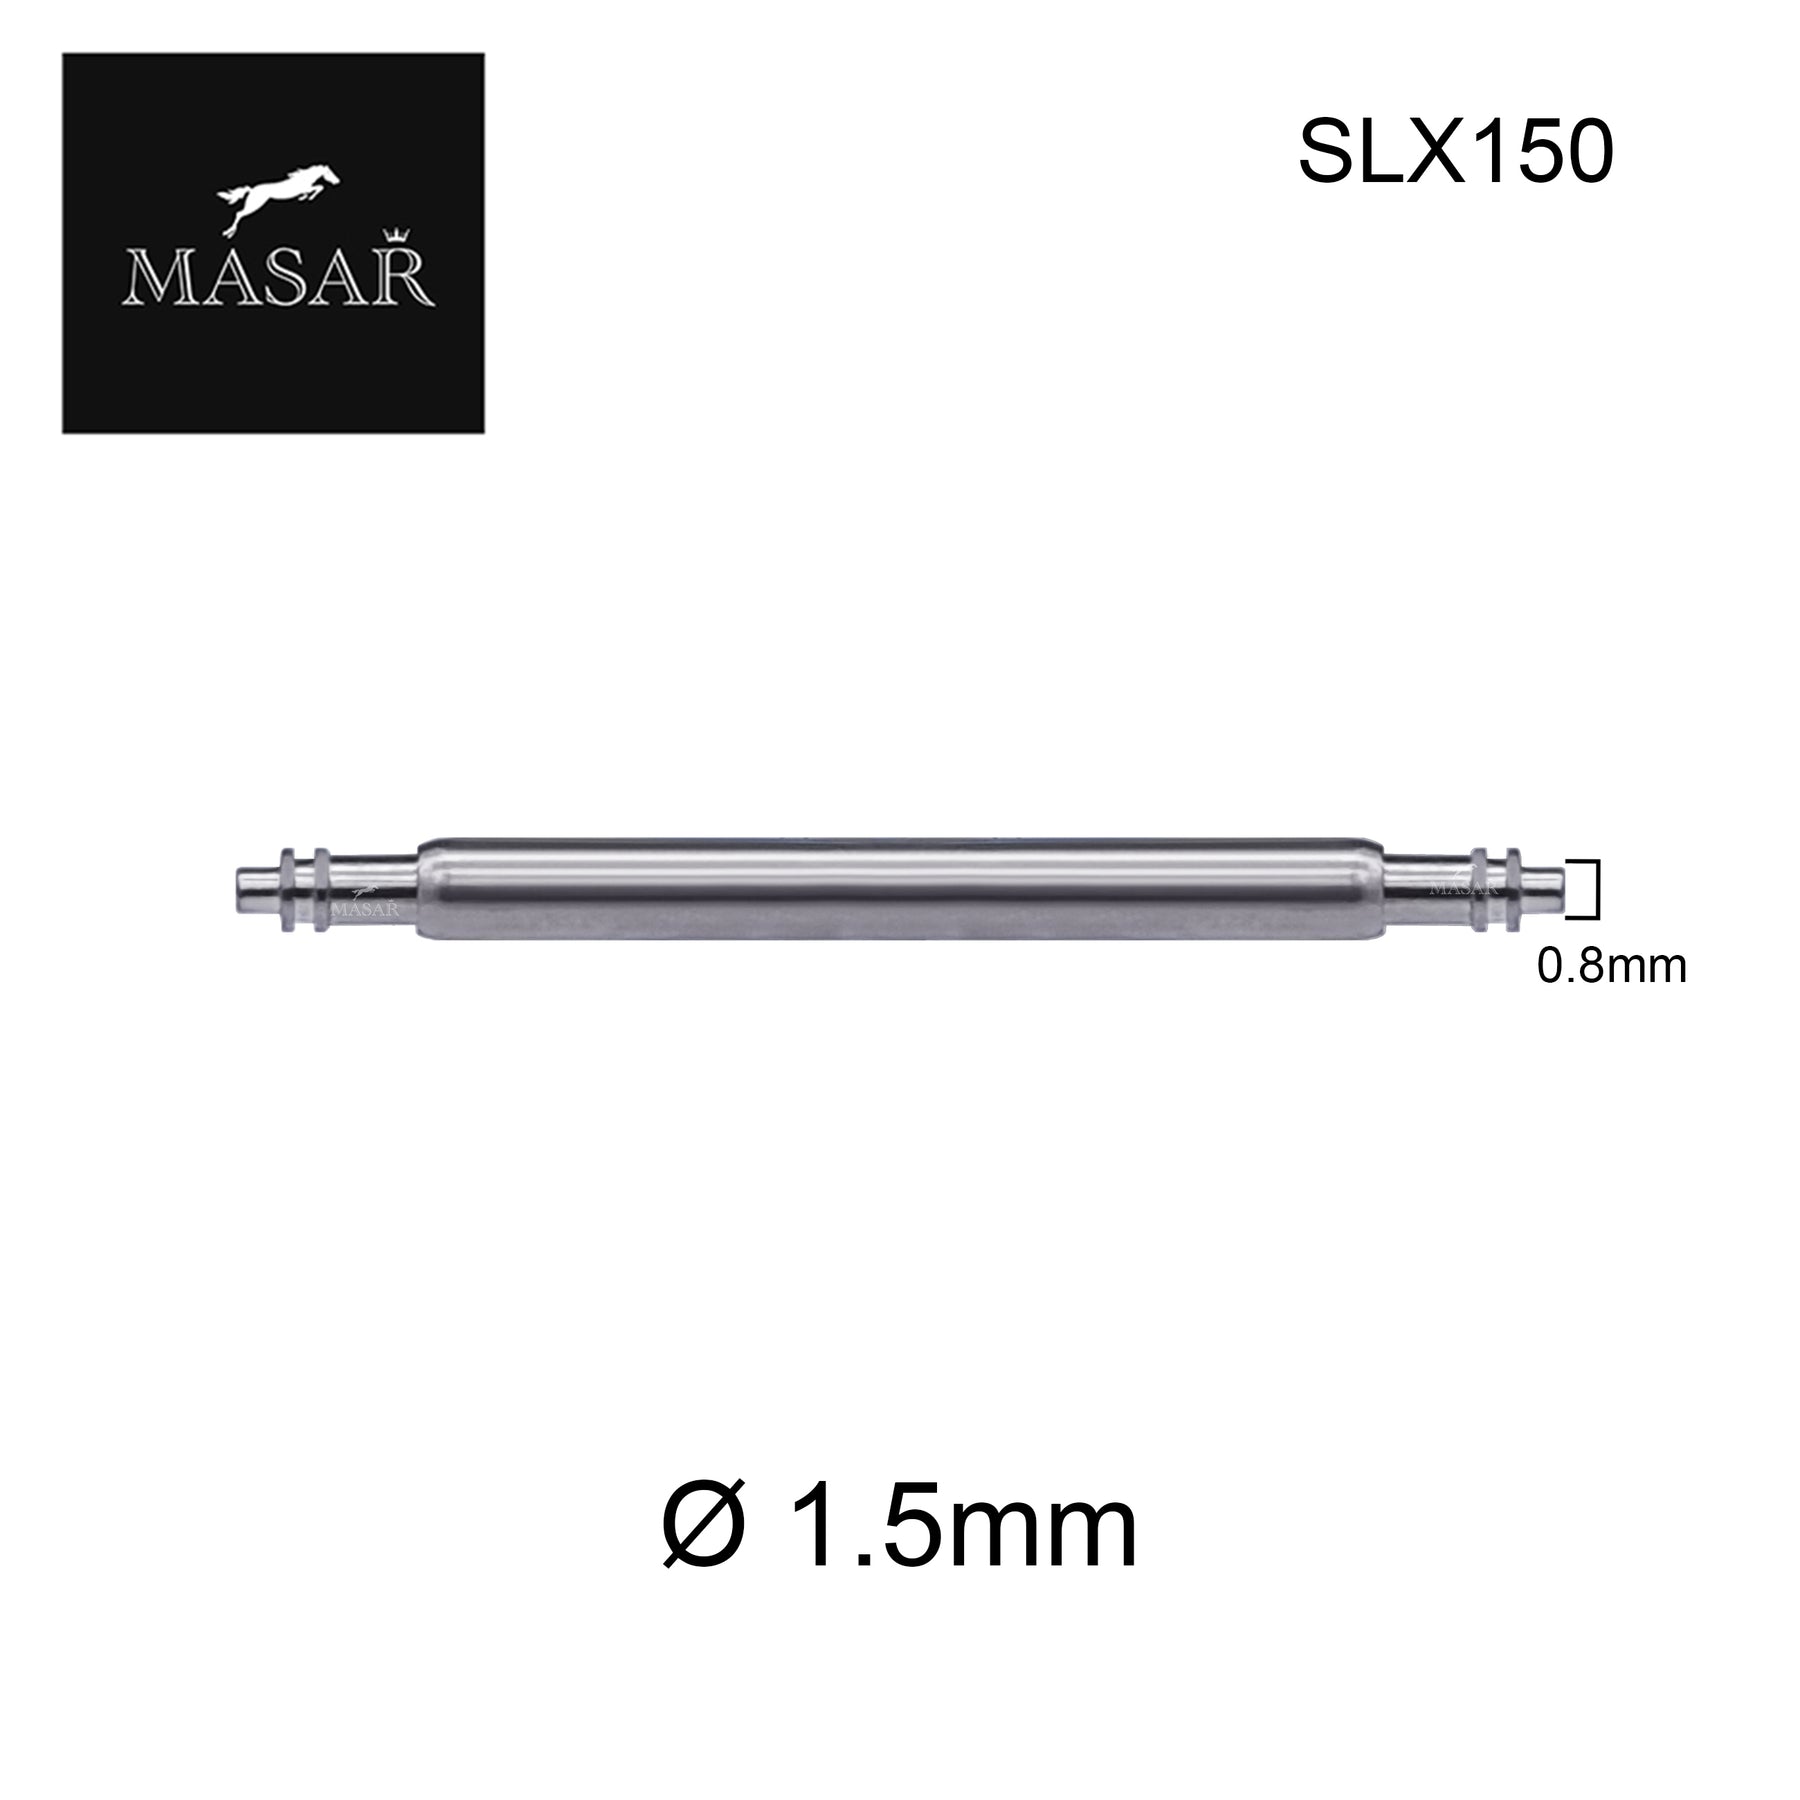 6mm à 46mm SLX150 | Ø 1.5mm - Double Flange (Bride) - Inox 316L - 2 pcs